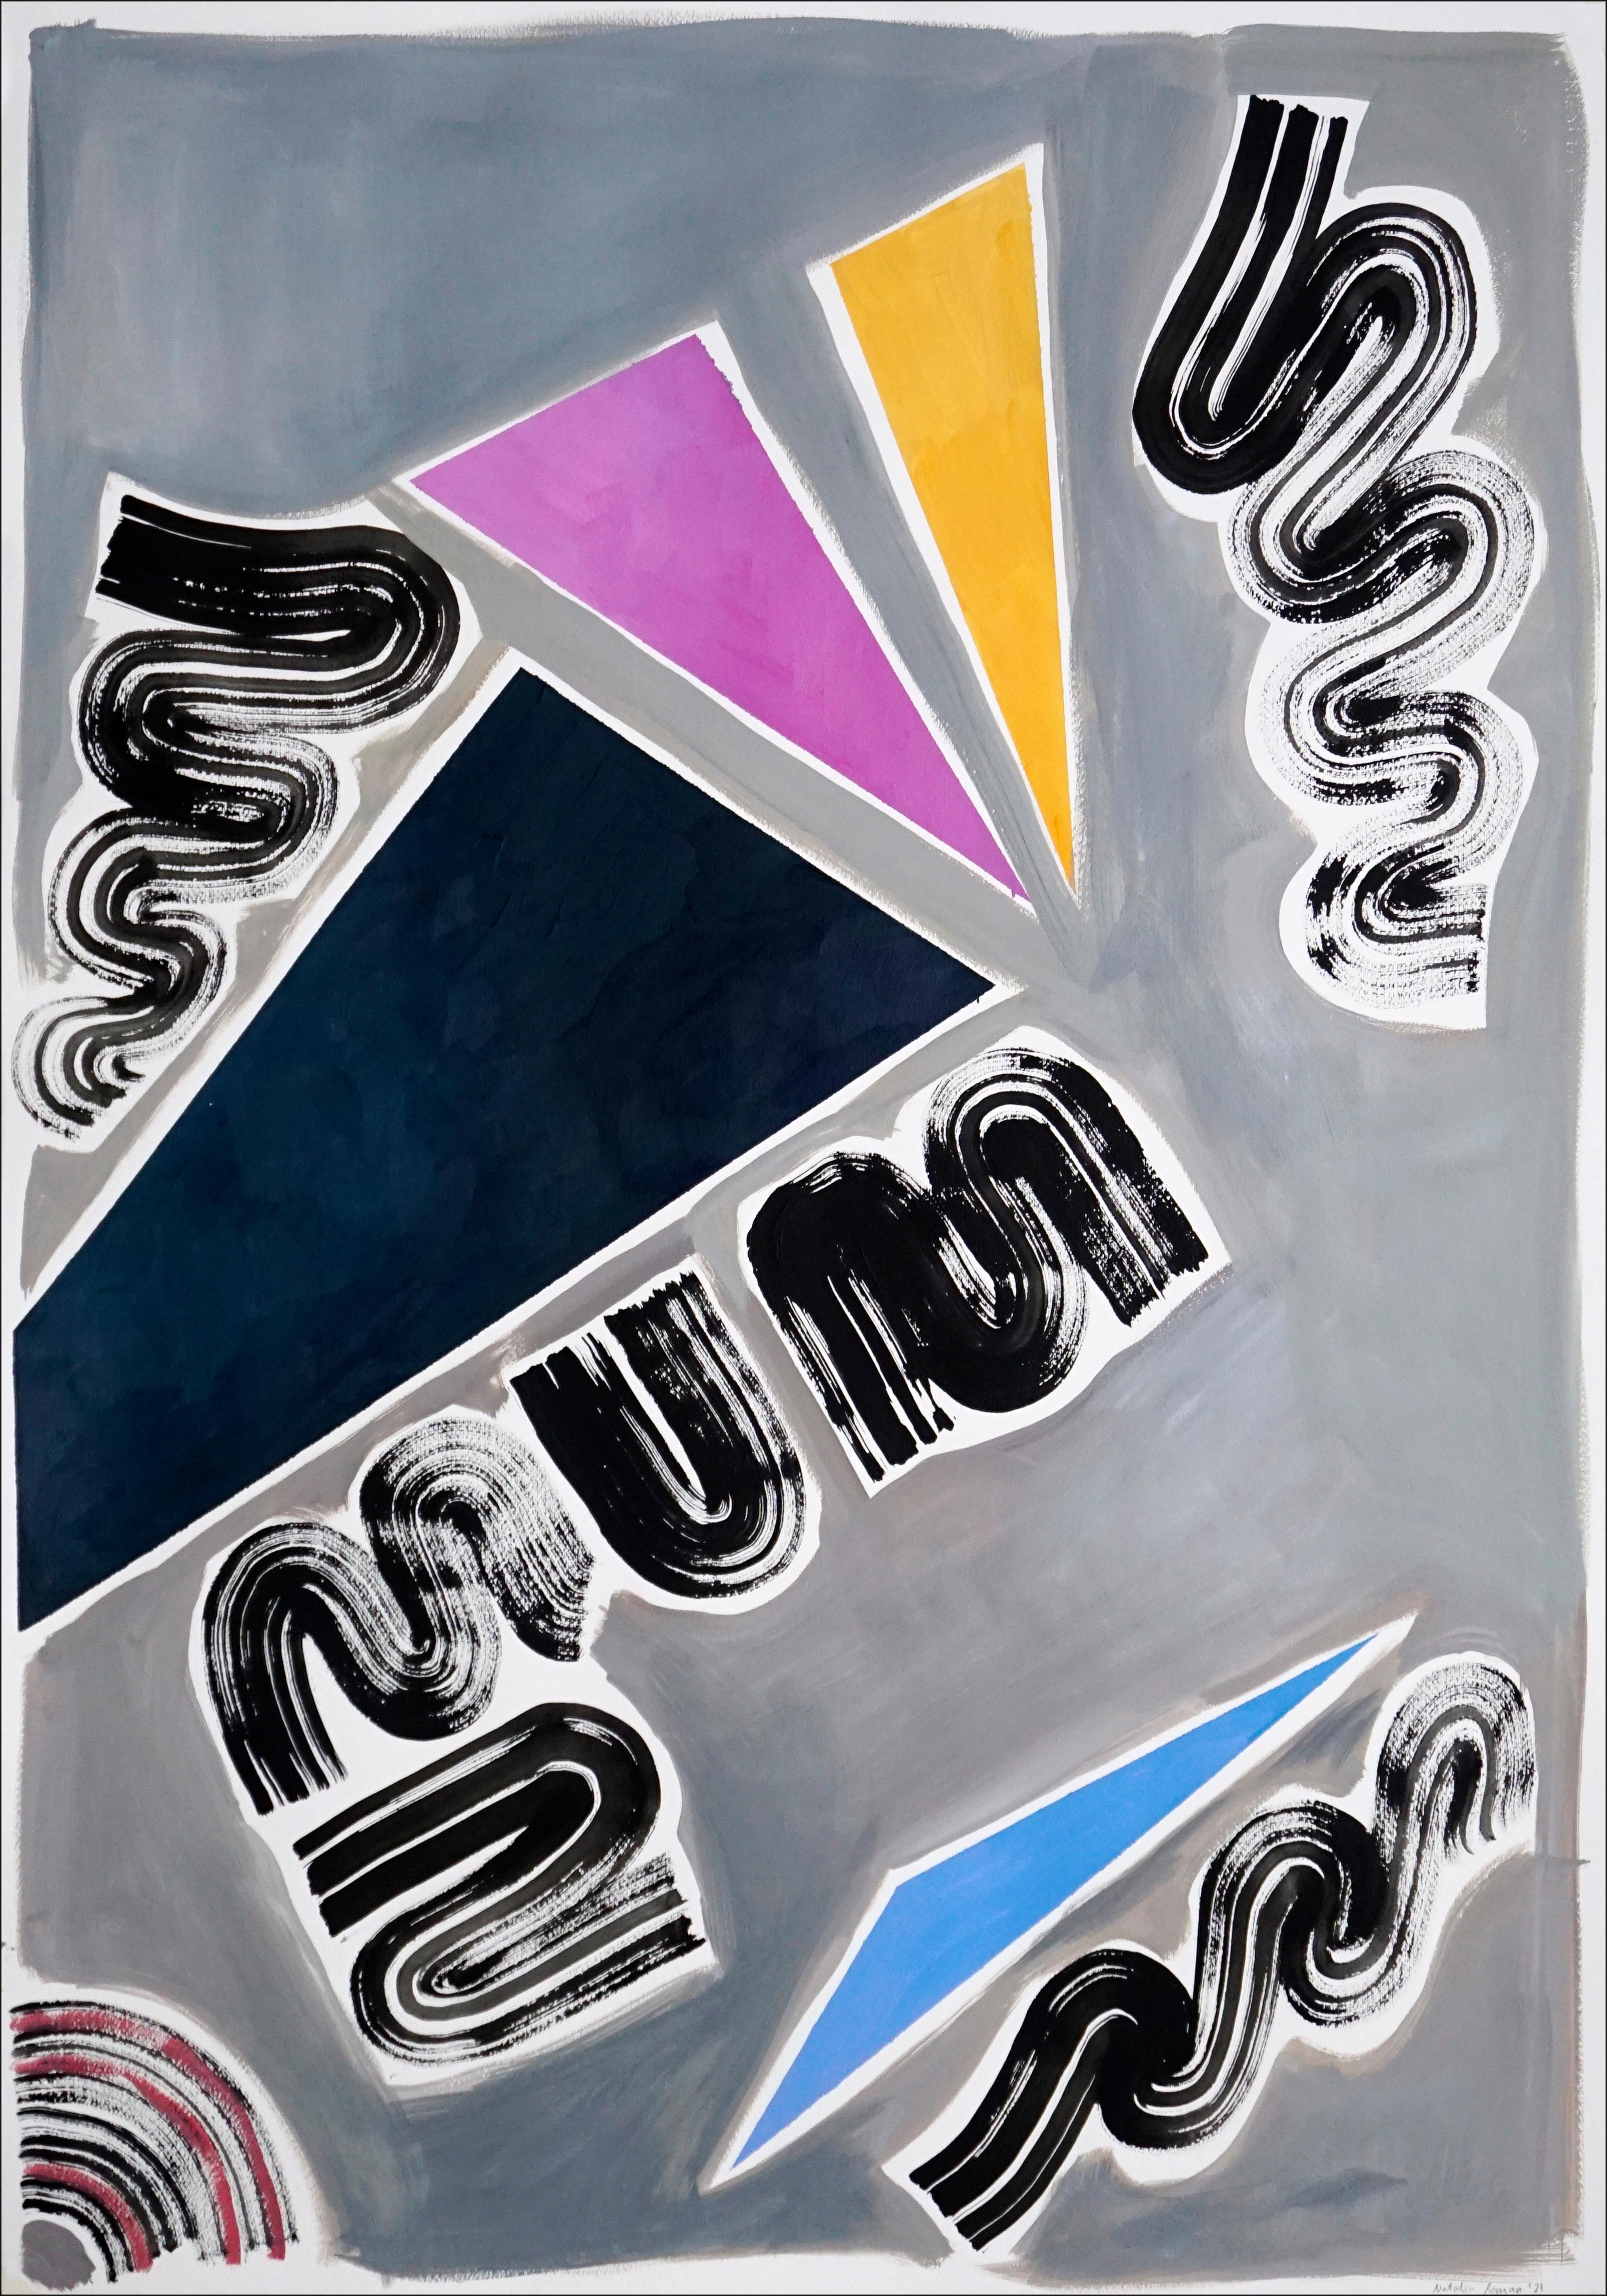 Neunziger Jahre Dreiecke und Wirbel Diptychon, Retro Futuristische Malerei, Glatte Palette (Grau), Abstract Painting, von Natalia Roman